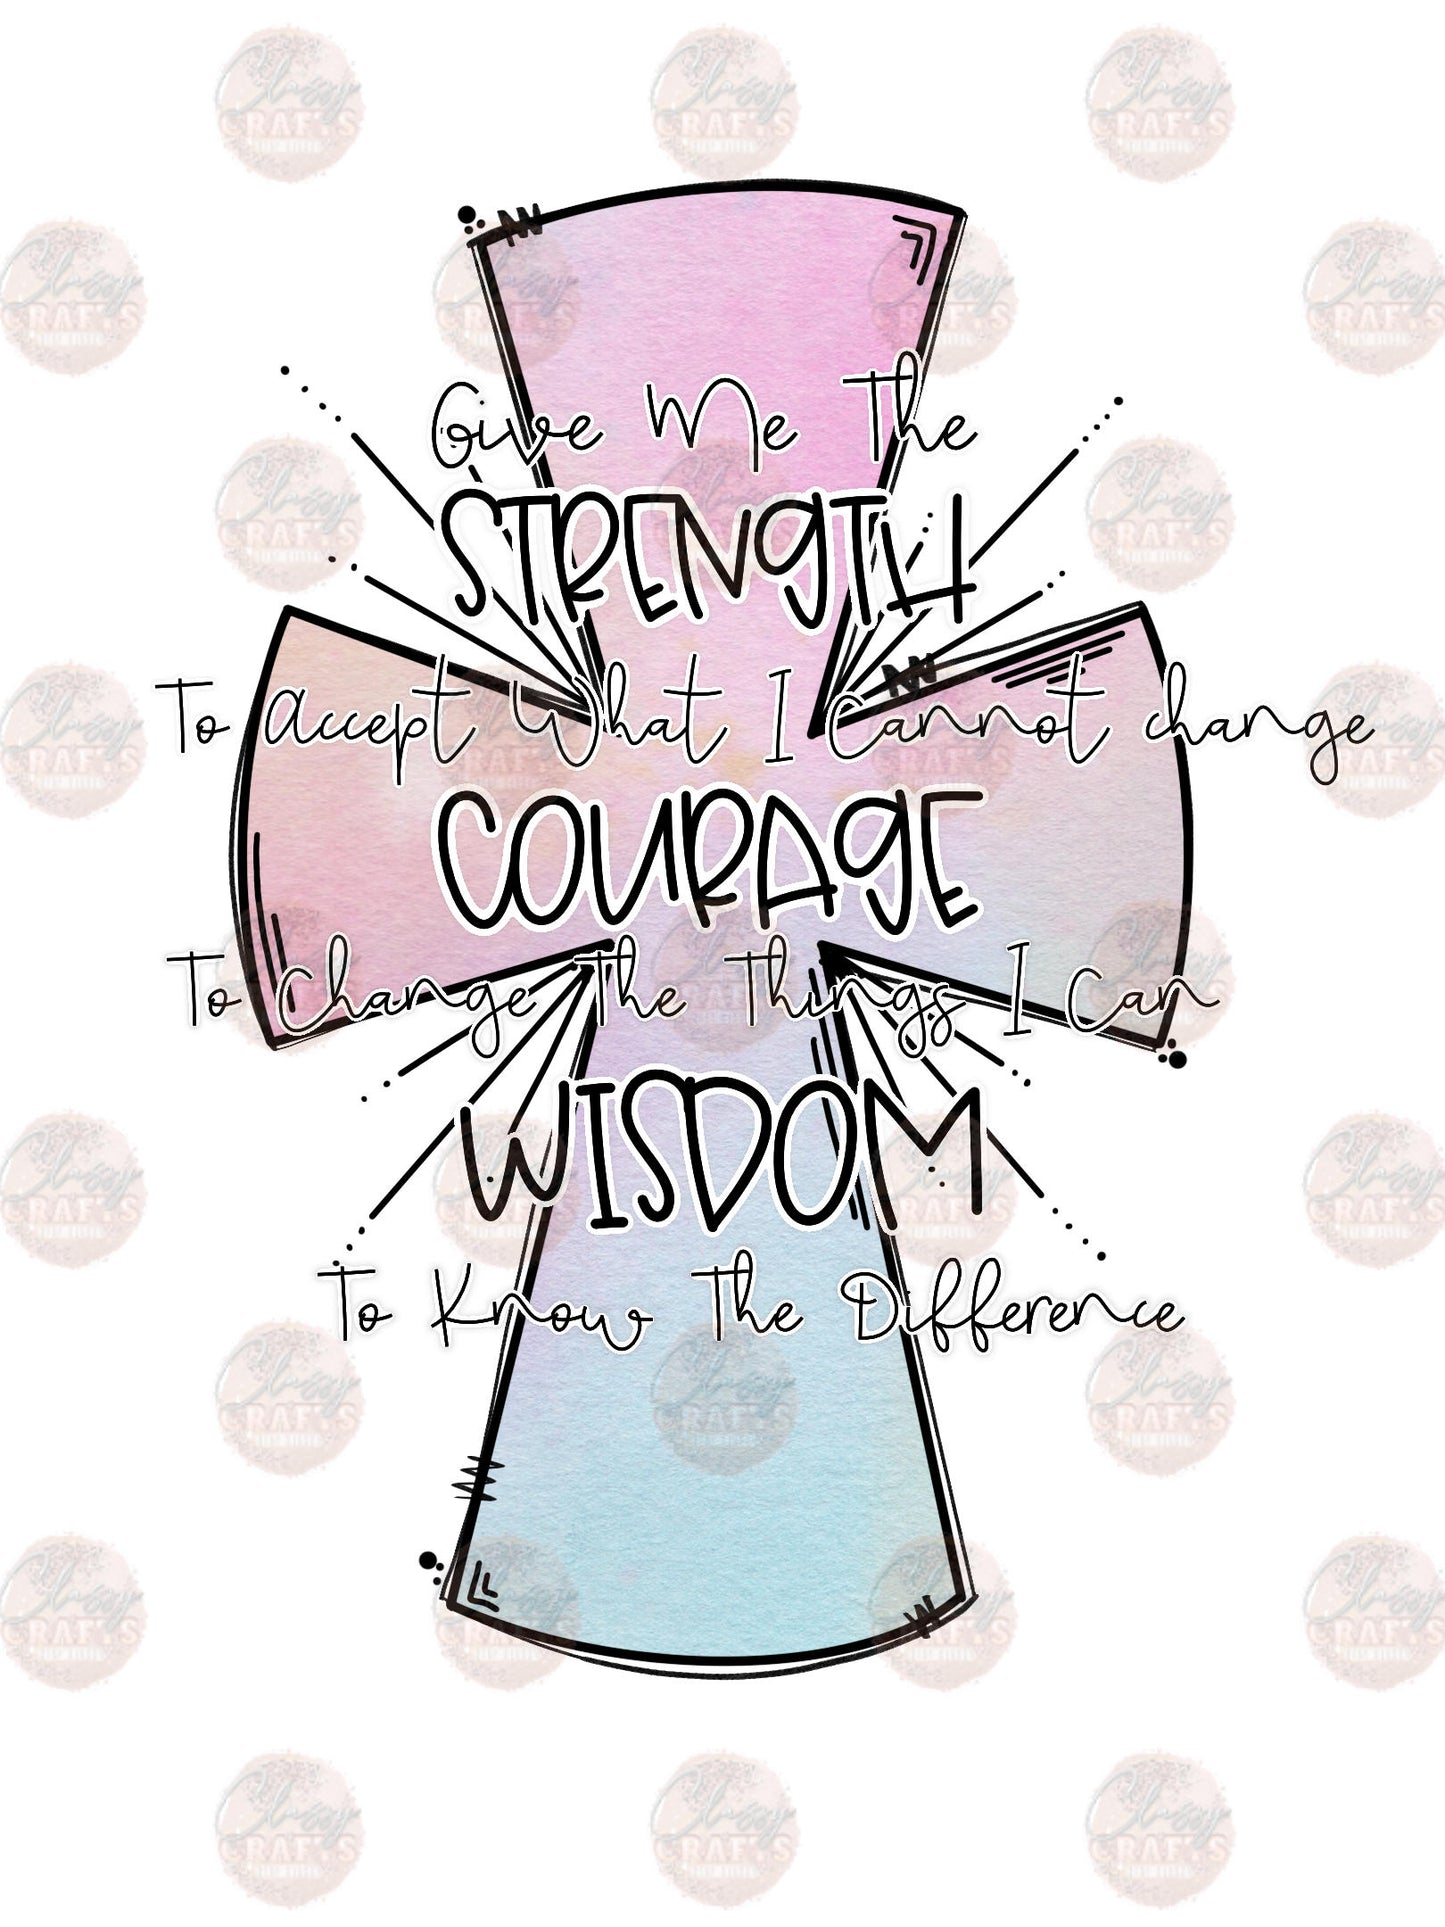 Strength Courage Wisdom - Sublimation Transfer